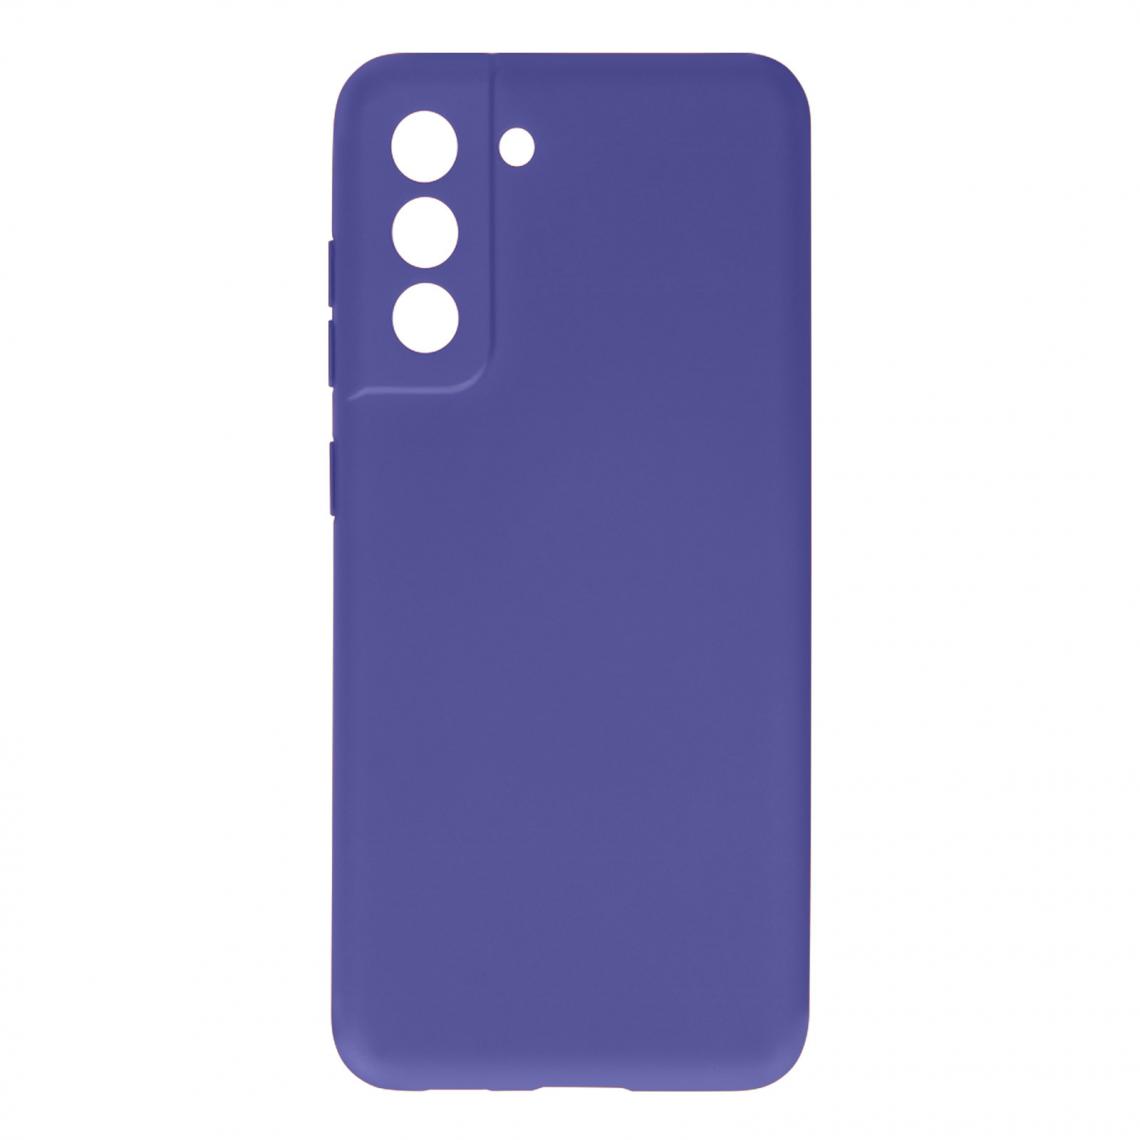 Avizar - Coque Samsung Galaxy S21 FE Silicone Semi-rigide Finition Soft Touch Fine Violet - Coque, étui smartphone